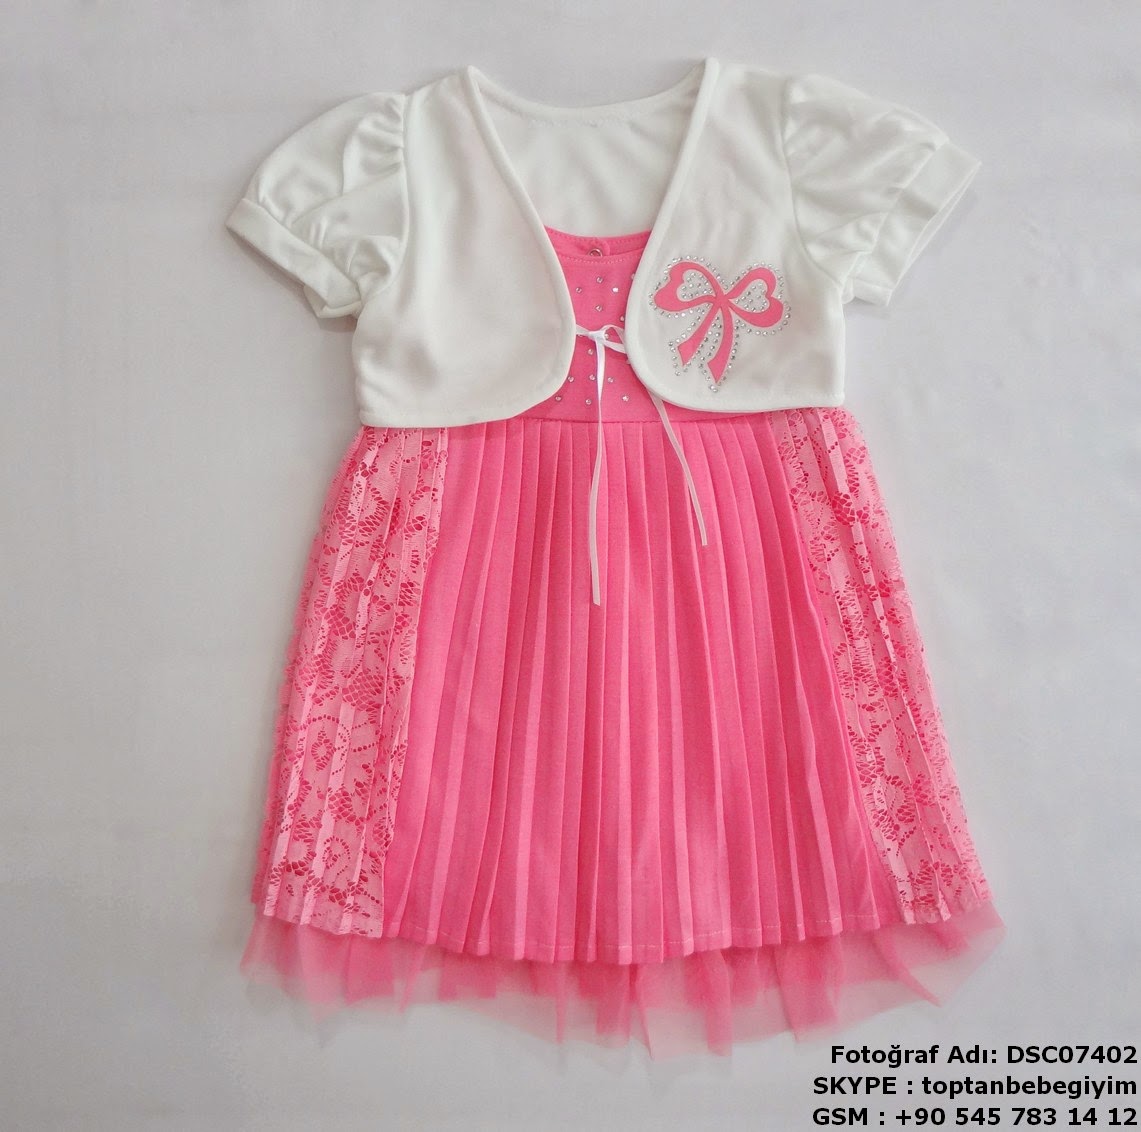 wholesale baby dress CheaP wholesale baby dresses